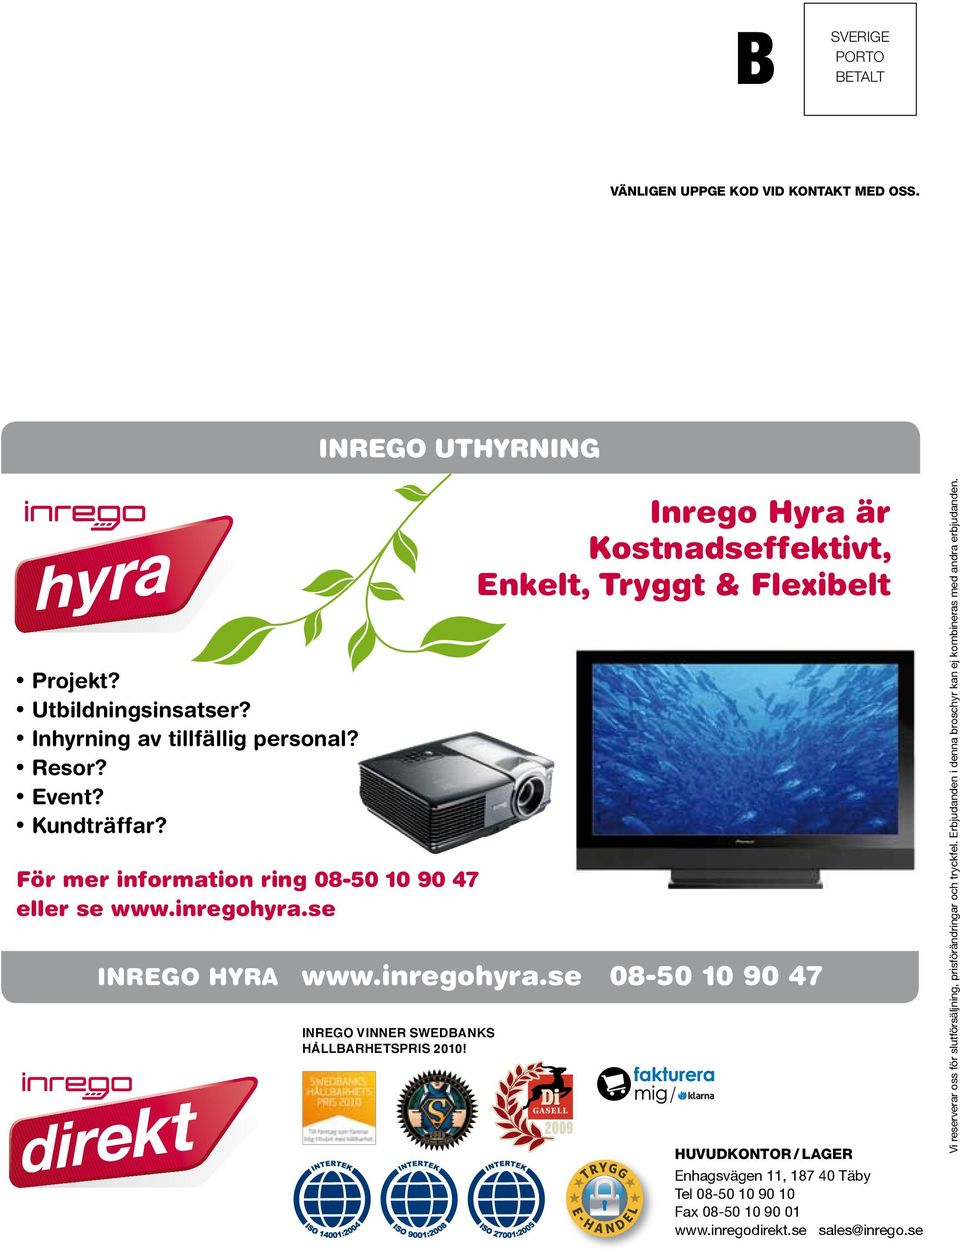 Inrego Hyra är Kostnadseffektivt, Enkelt, Tryggt & Flexibelt / HUVUDKONTOR / LAGER Enhagsvägen 11, 187 40 Täby Tel 08-50 10 90 10 Fax 08-50 10 90 01